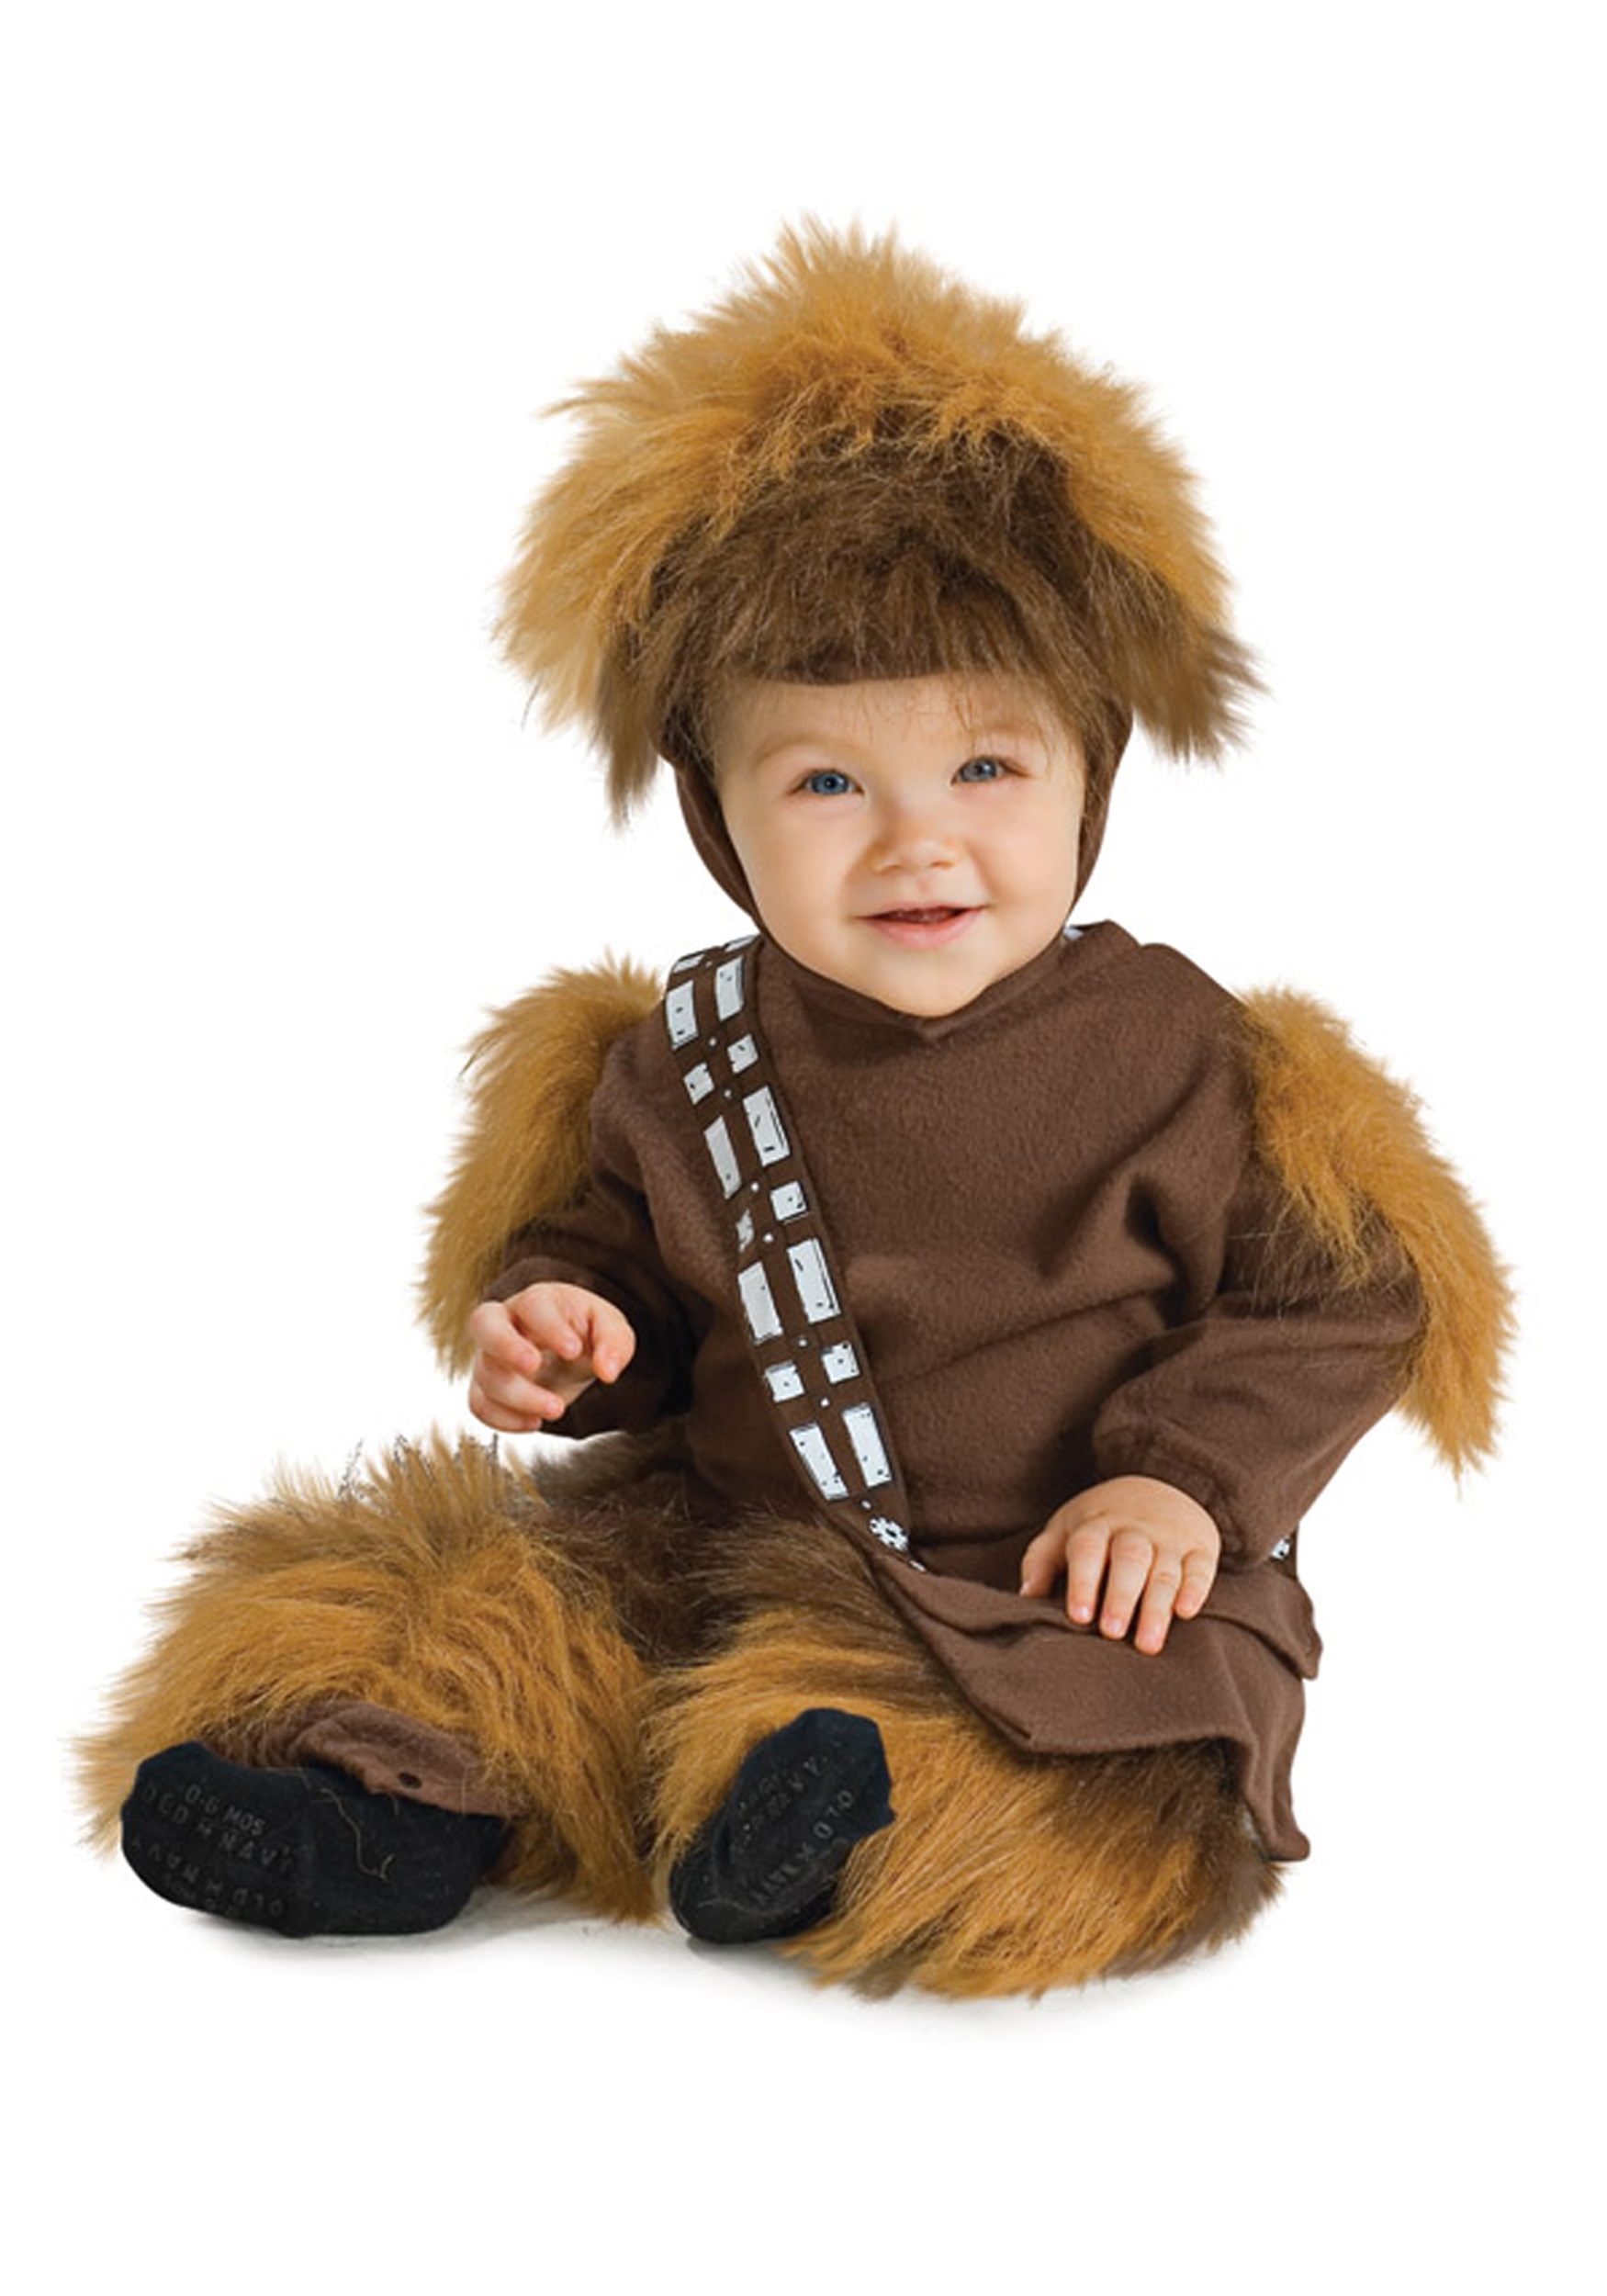 baby star wars costume